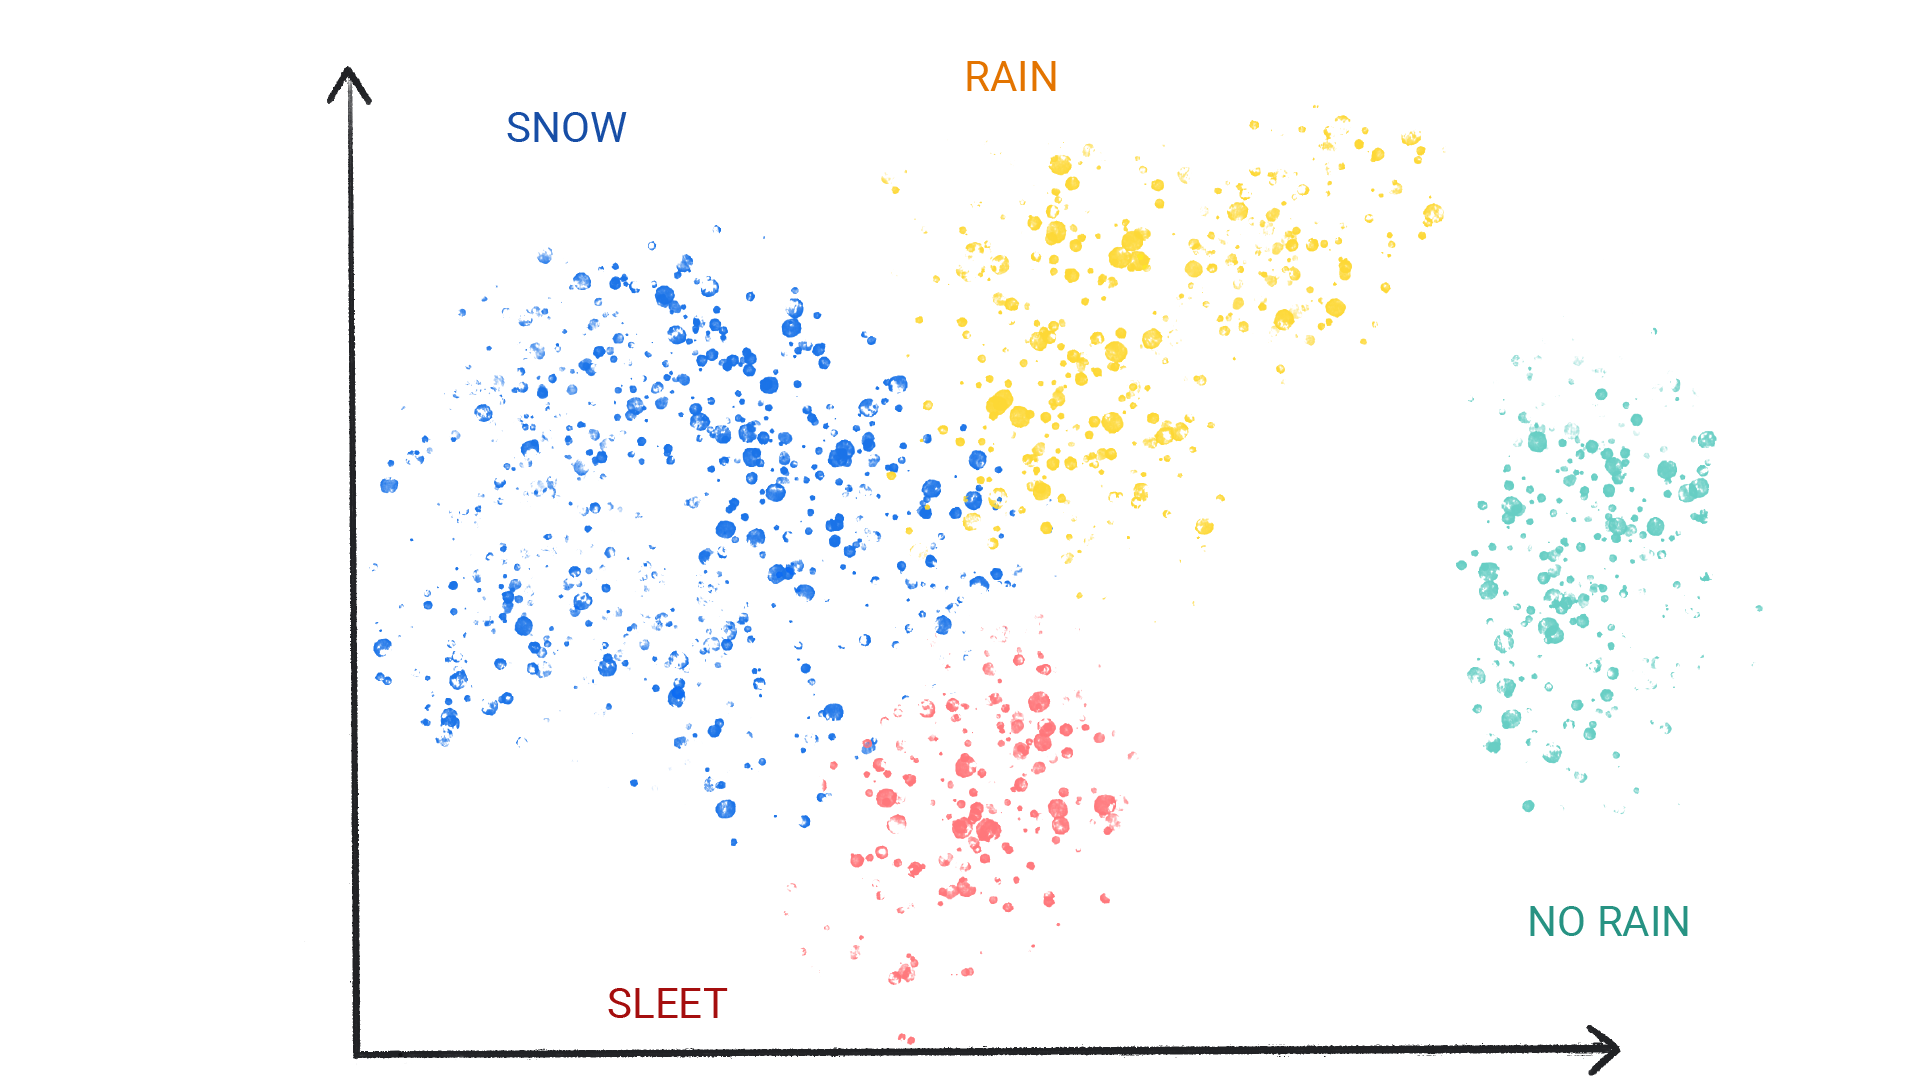 눈, 비, 우박, 비 없음으로 라벨이 지정된 클러스터에서 색상 점을 나타내는 이미지